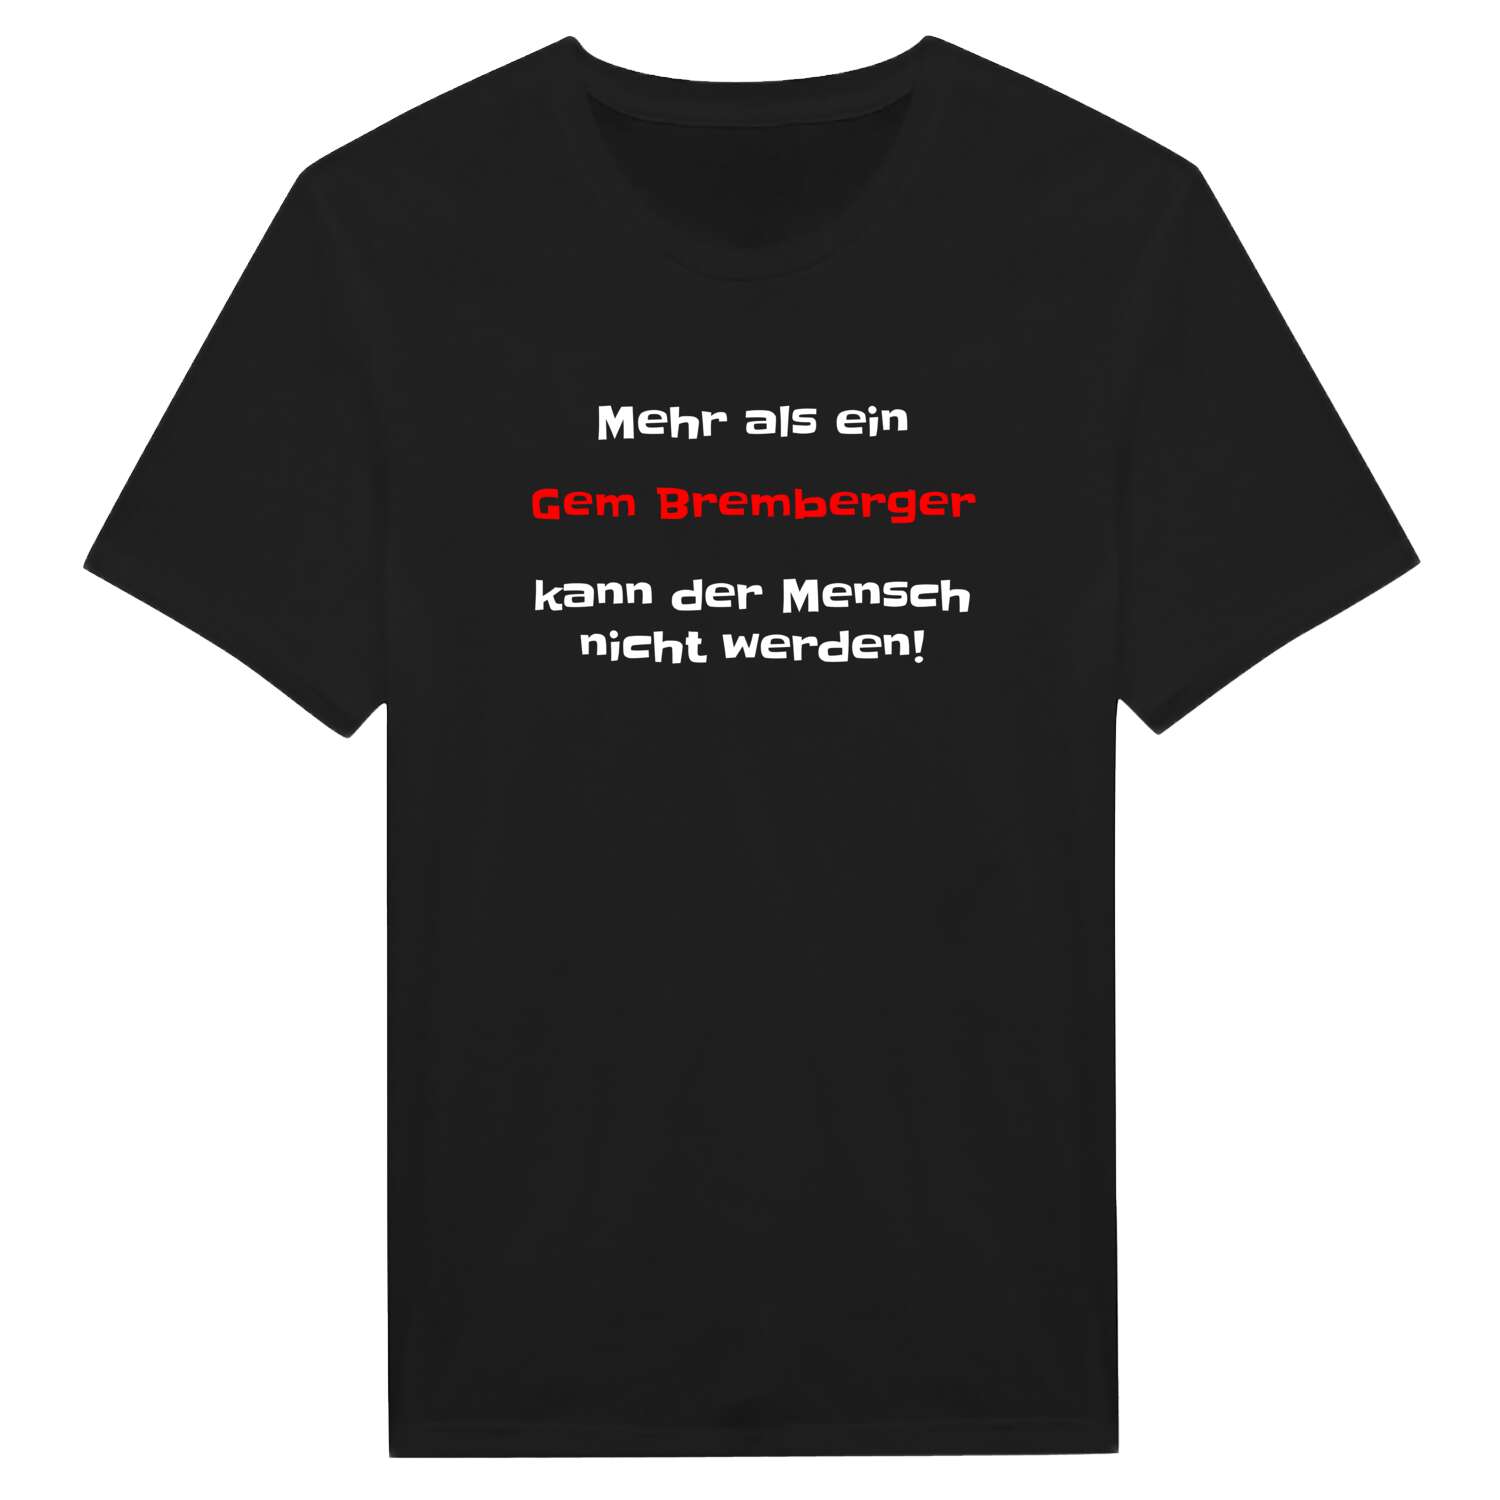 Gem Bremberg T-Shirt »Mehr als ein«